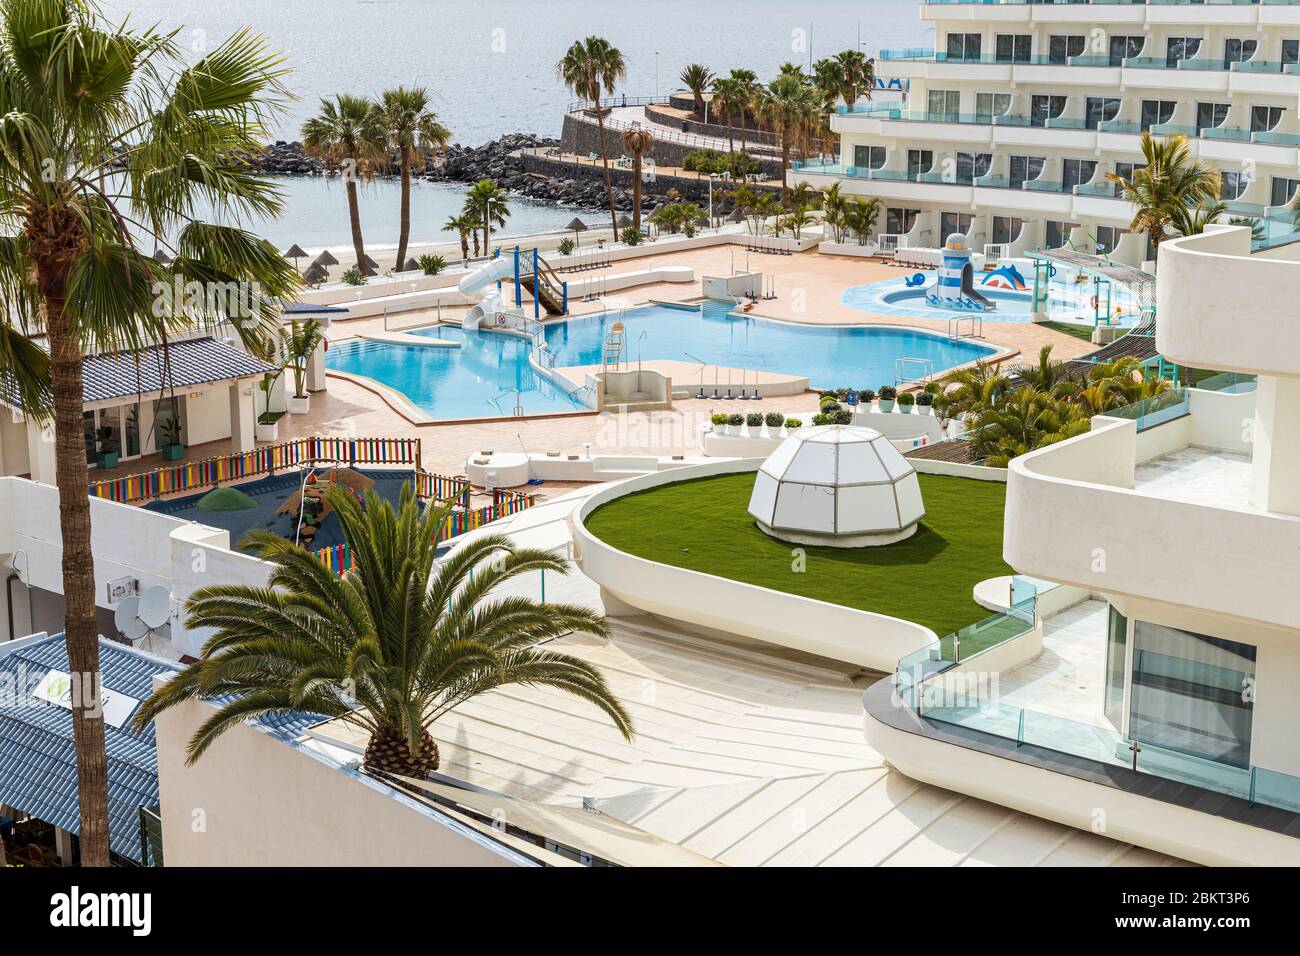 Leerer Pool und Liegewiese im HOVIMA La pinta Hotel während der Zusammensperrung 19 im touristischen Ferienort Costa Adeje, Teneriffa, Cana Stockfoto